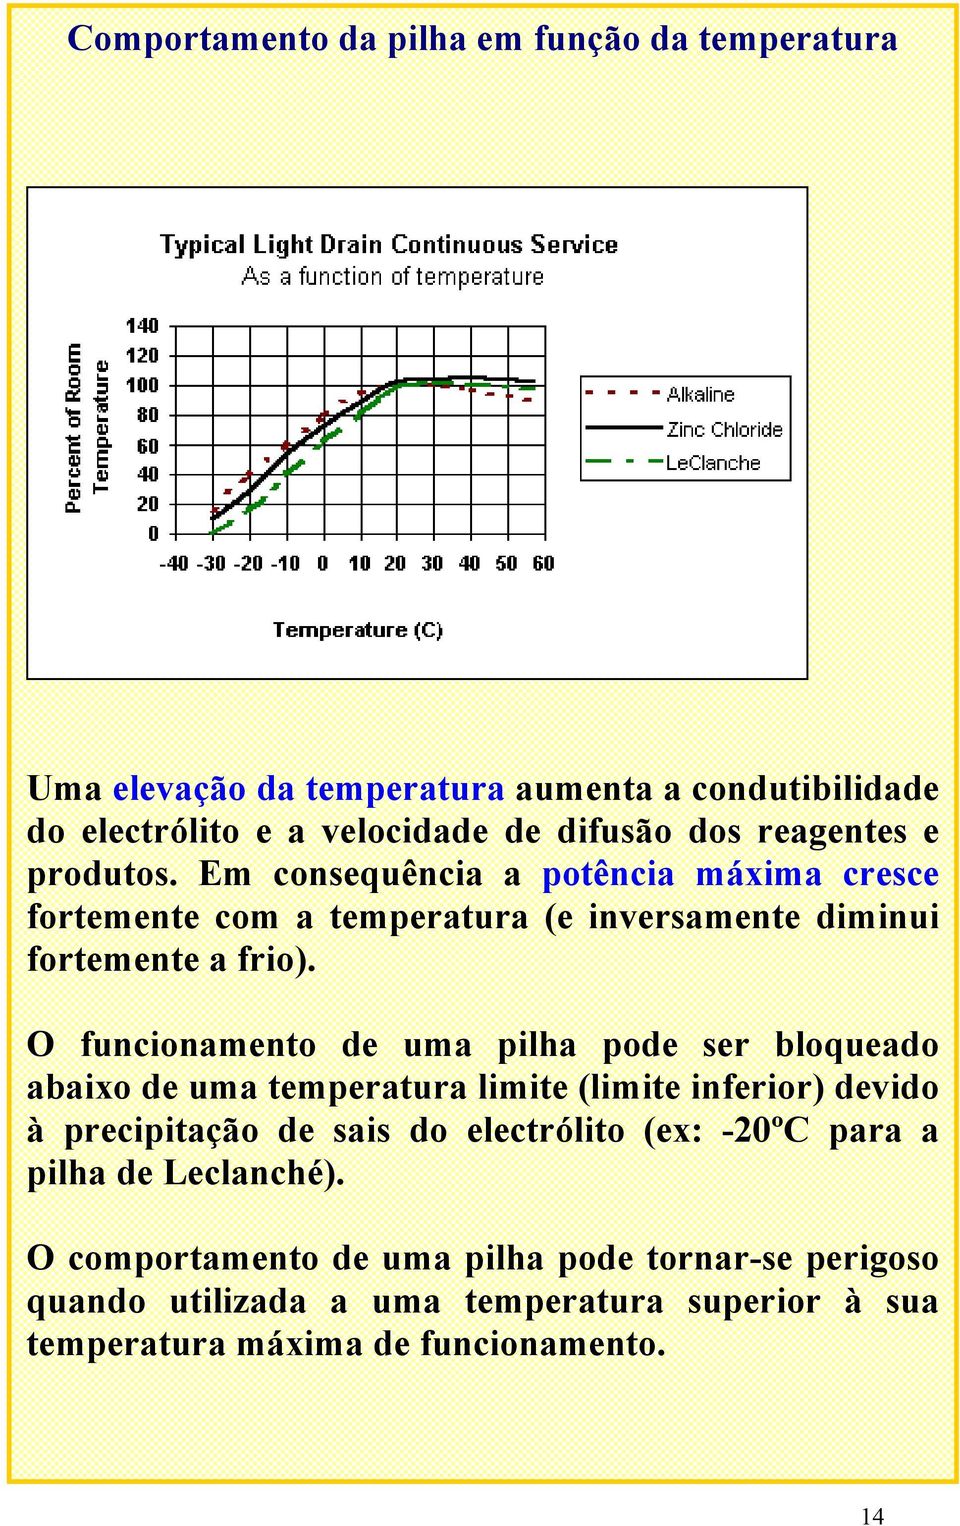 O funcionamento de uma pilha pode ser bloqueado abaixo de uma temperatura limite (limite inferior) devido à precipitação de sais do electrólito (ex: